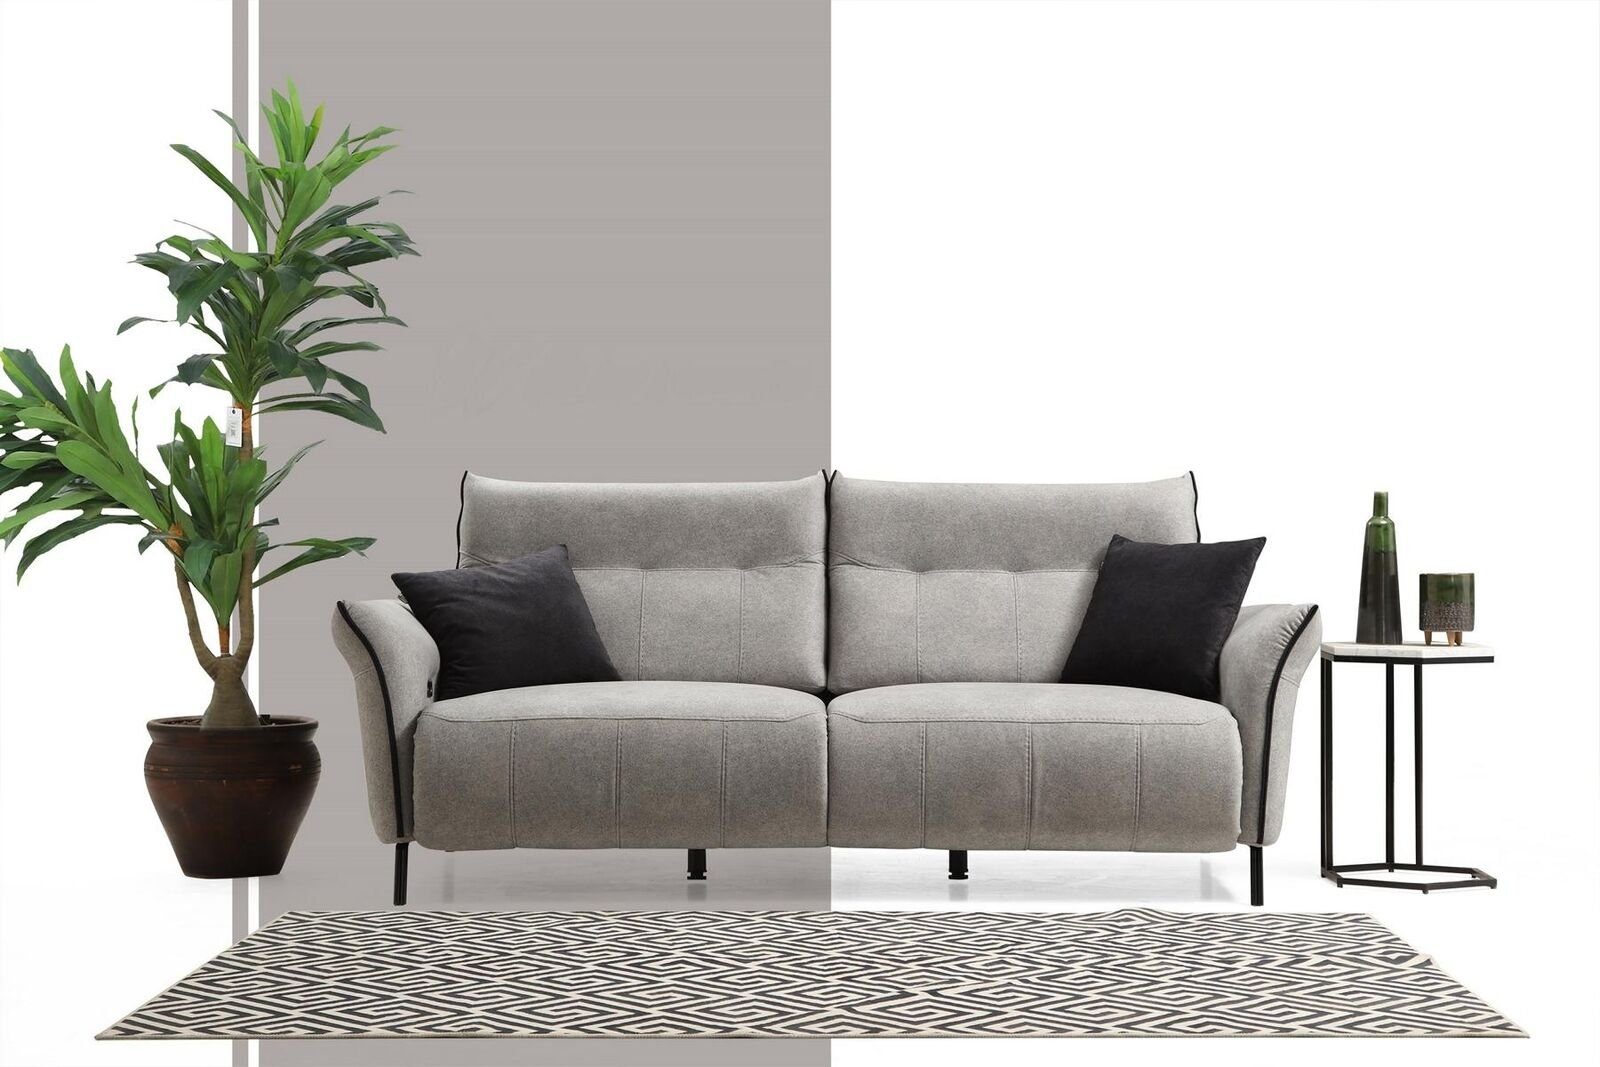 JVmoebel 3-Sitzer Luxus Dreisitzer Sofa Couch Designer Modern Polster Textil Neu Möbel, 1 Teile, Made in Europa